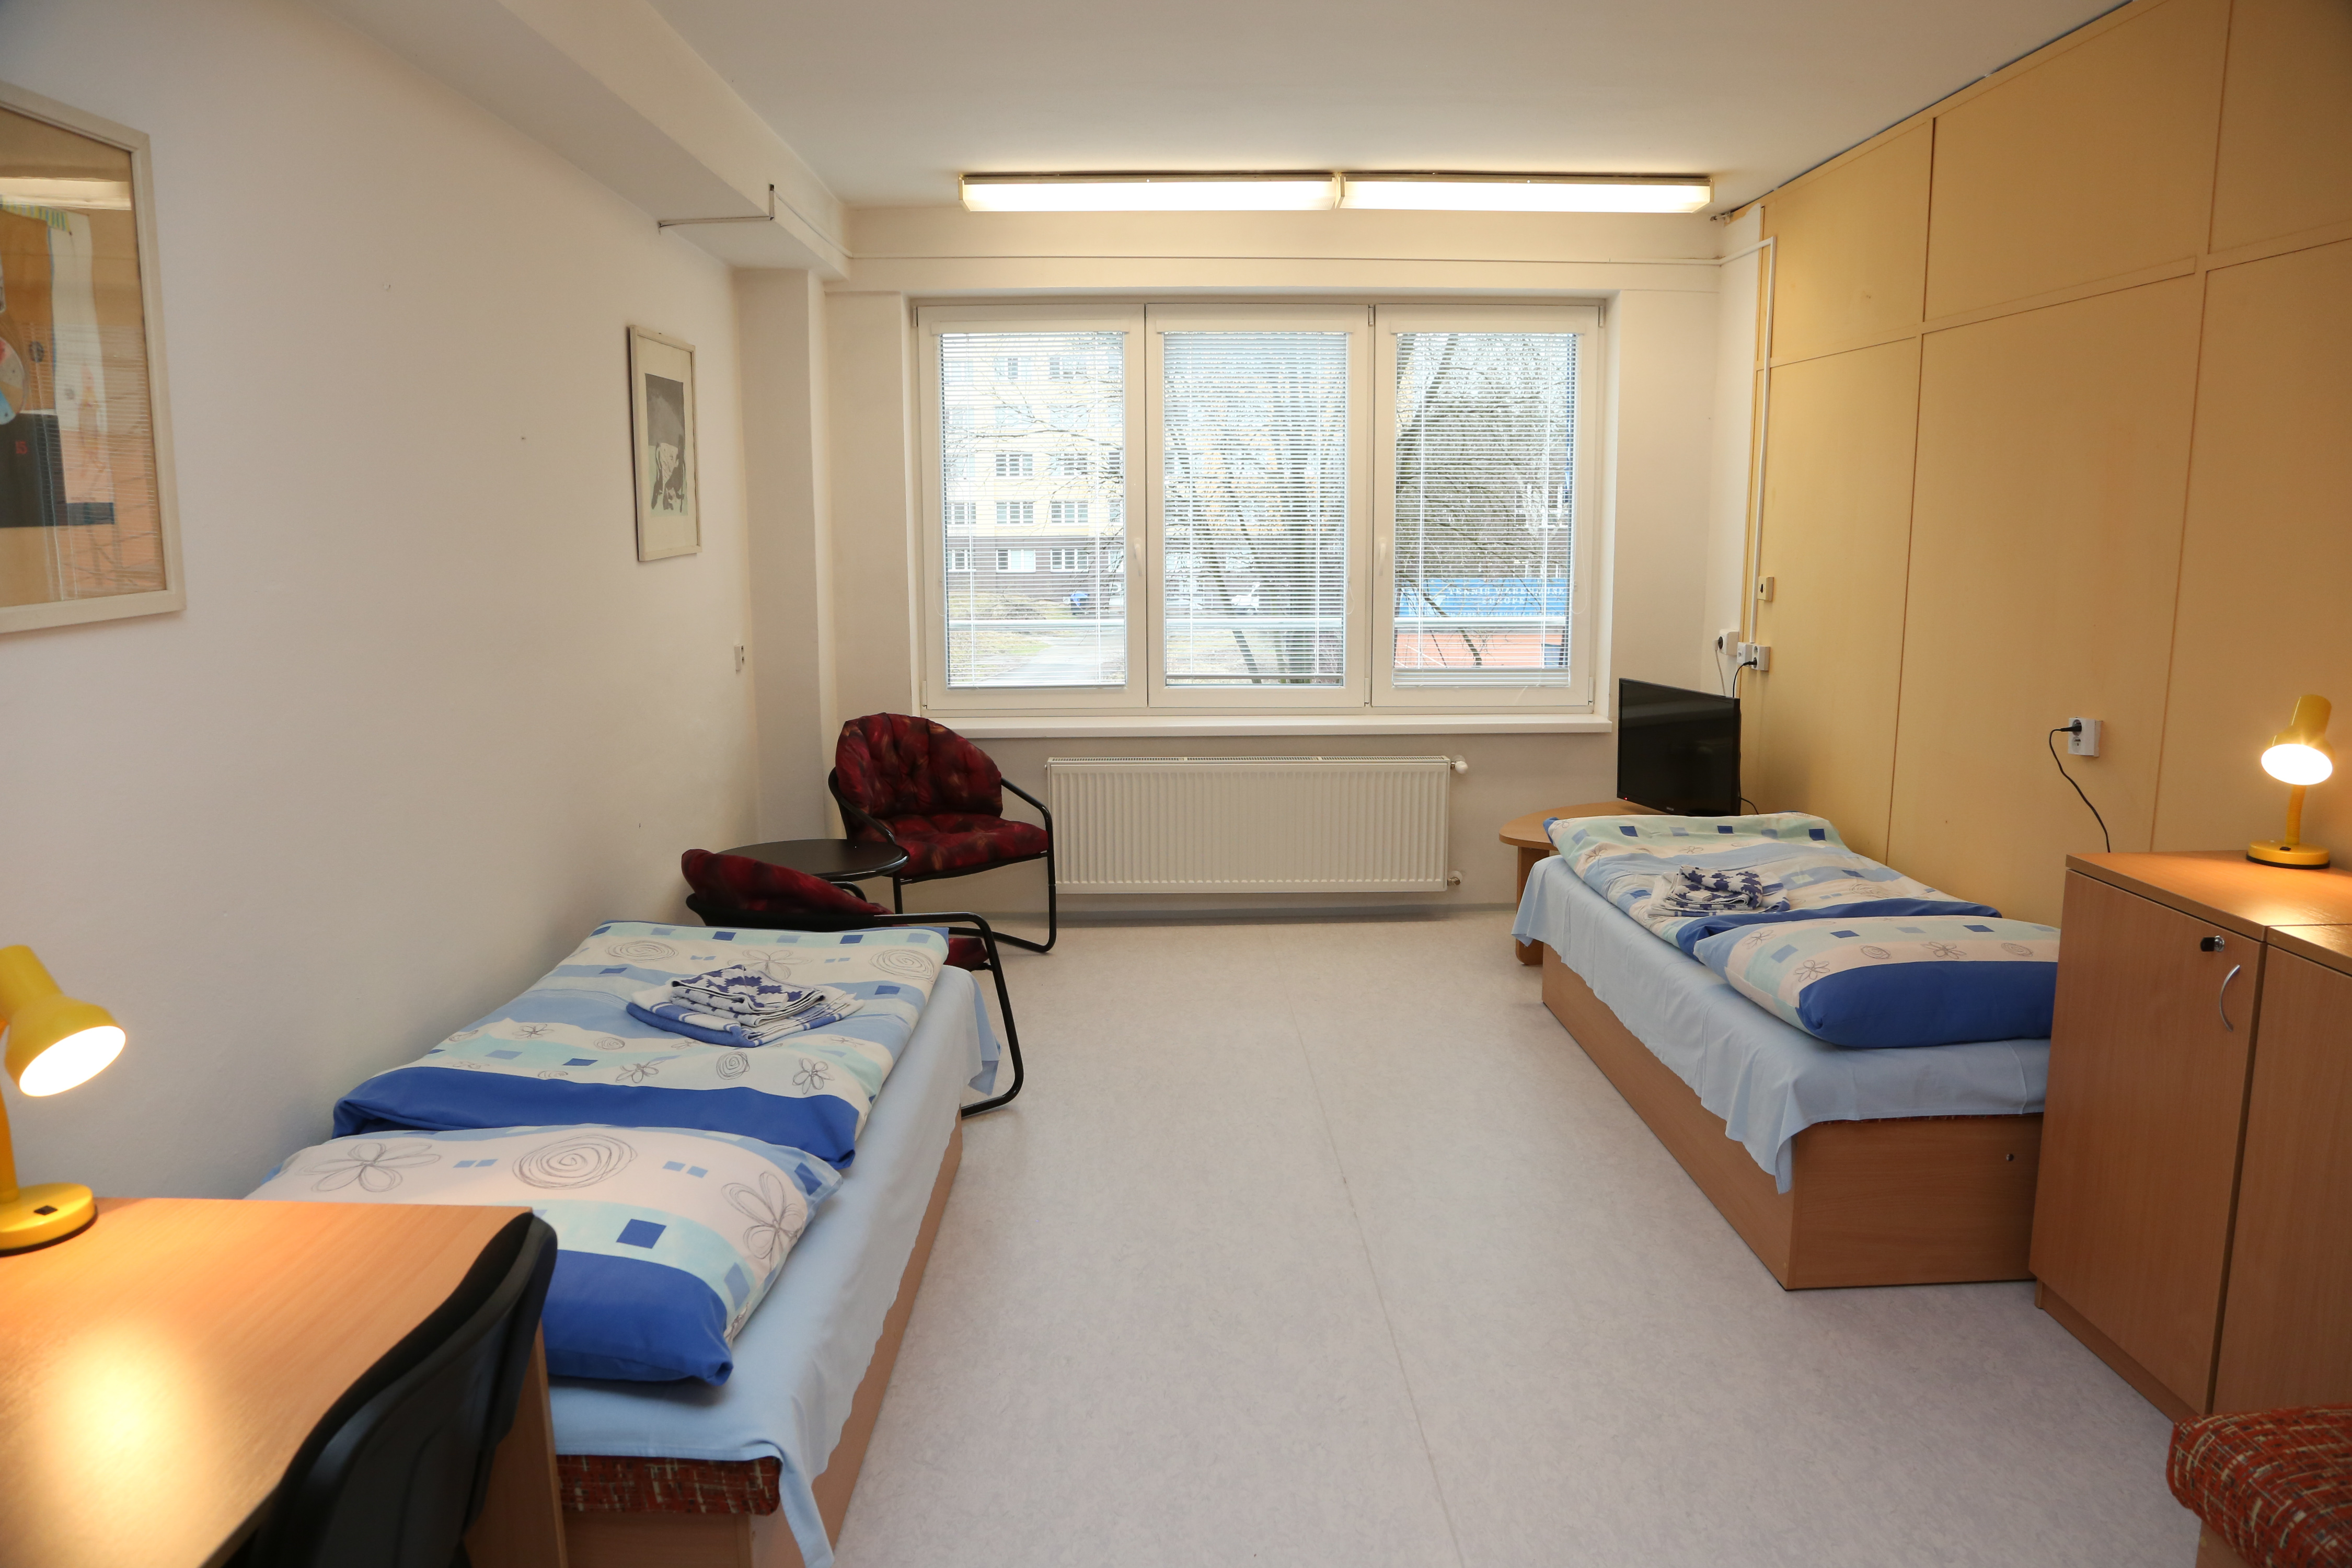 Ubytovacie zariadenie Veľký Diel je súčasťou Žilinskej univerzity v Žiline.  Poskytuje ubytovanie pre študentov, ale aj širokú verejnosť